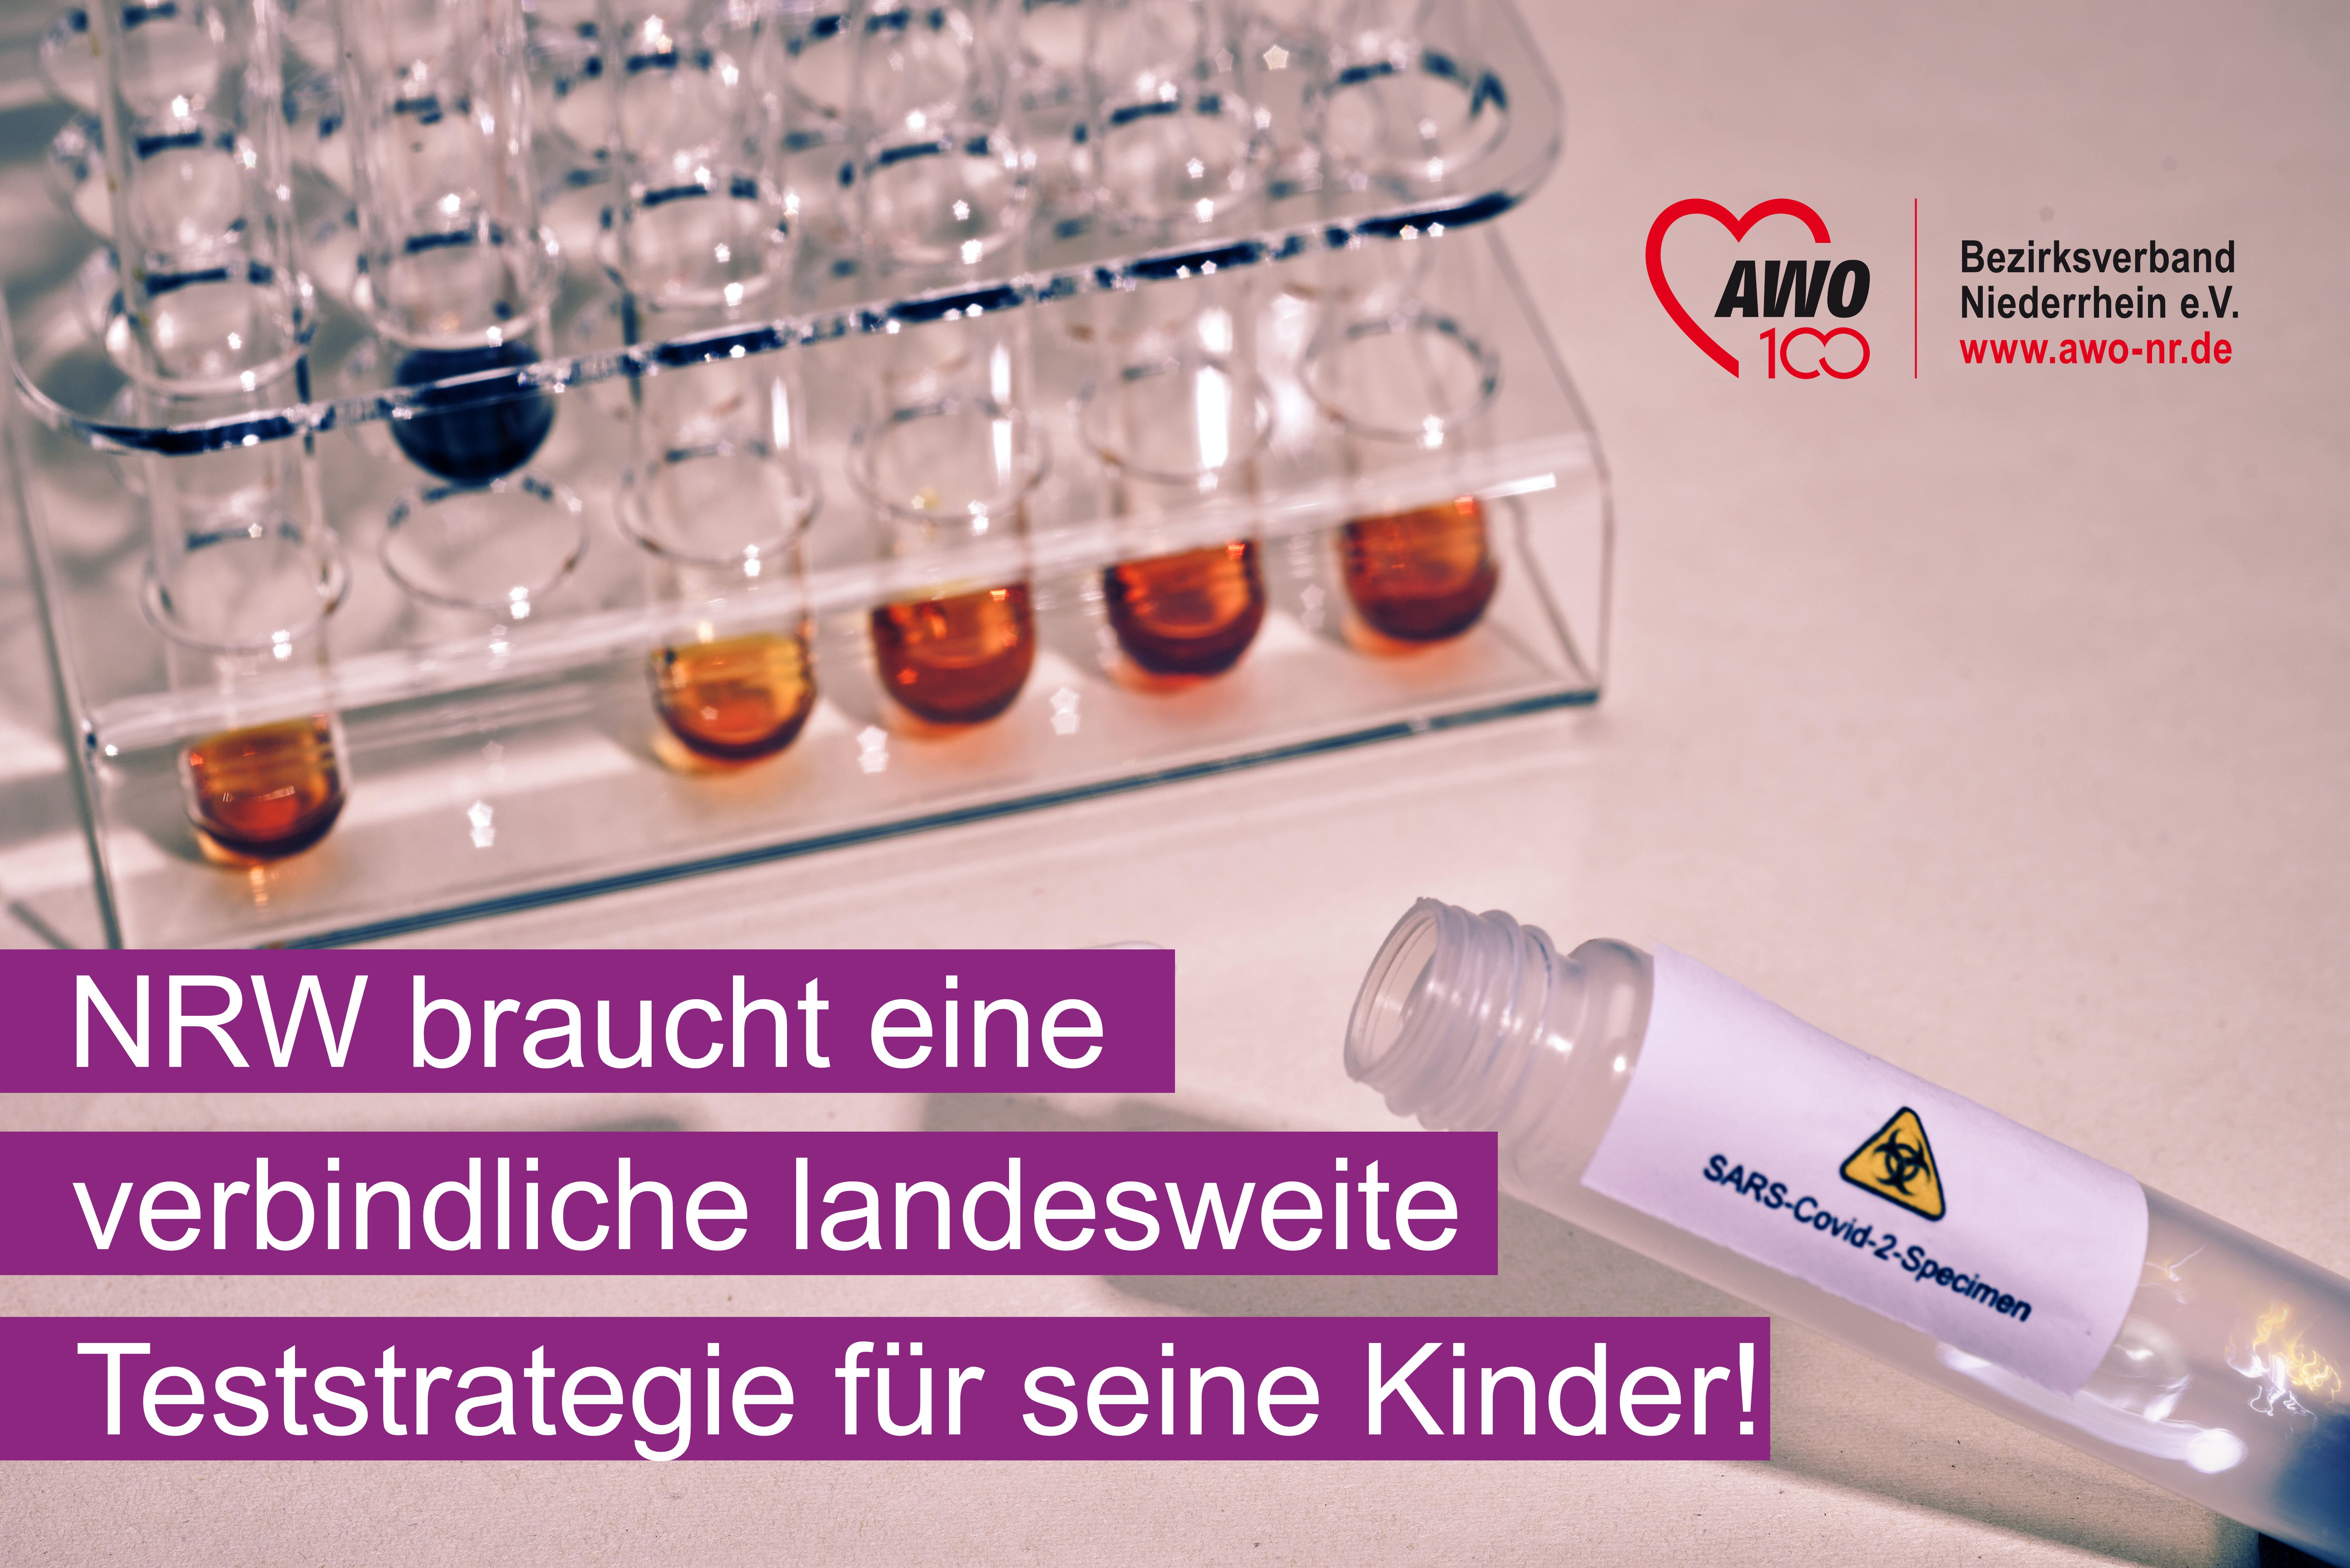 Das Foto zeigt eine Laborszene und die Schrift: NRW braucht eine verbindliche landesweite Teststrategie für seine Kinder!